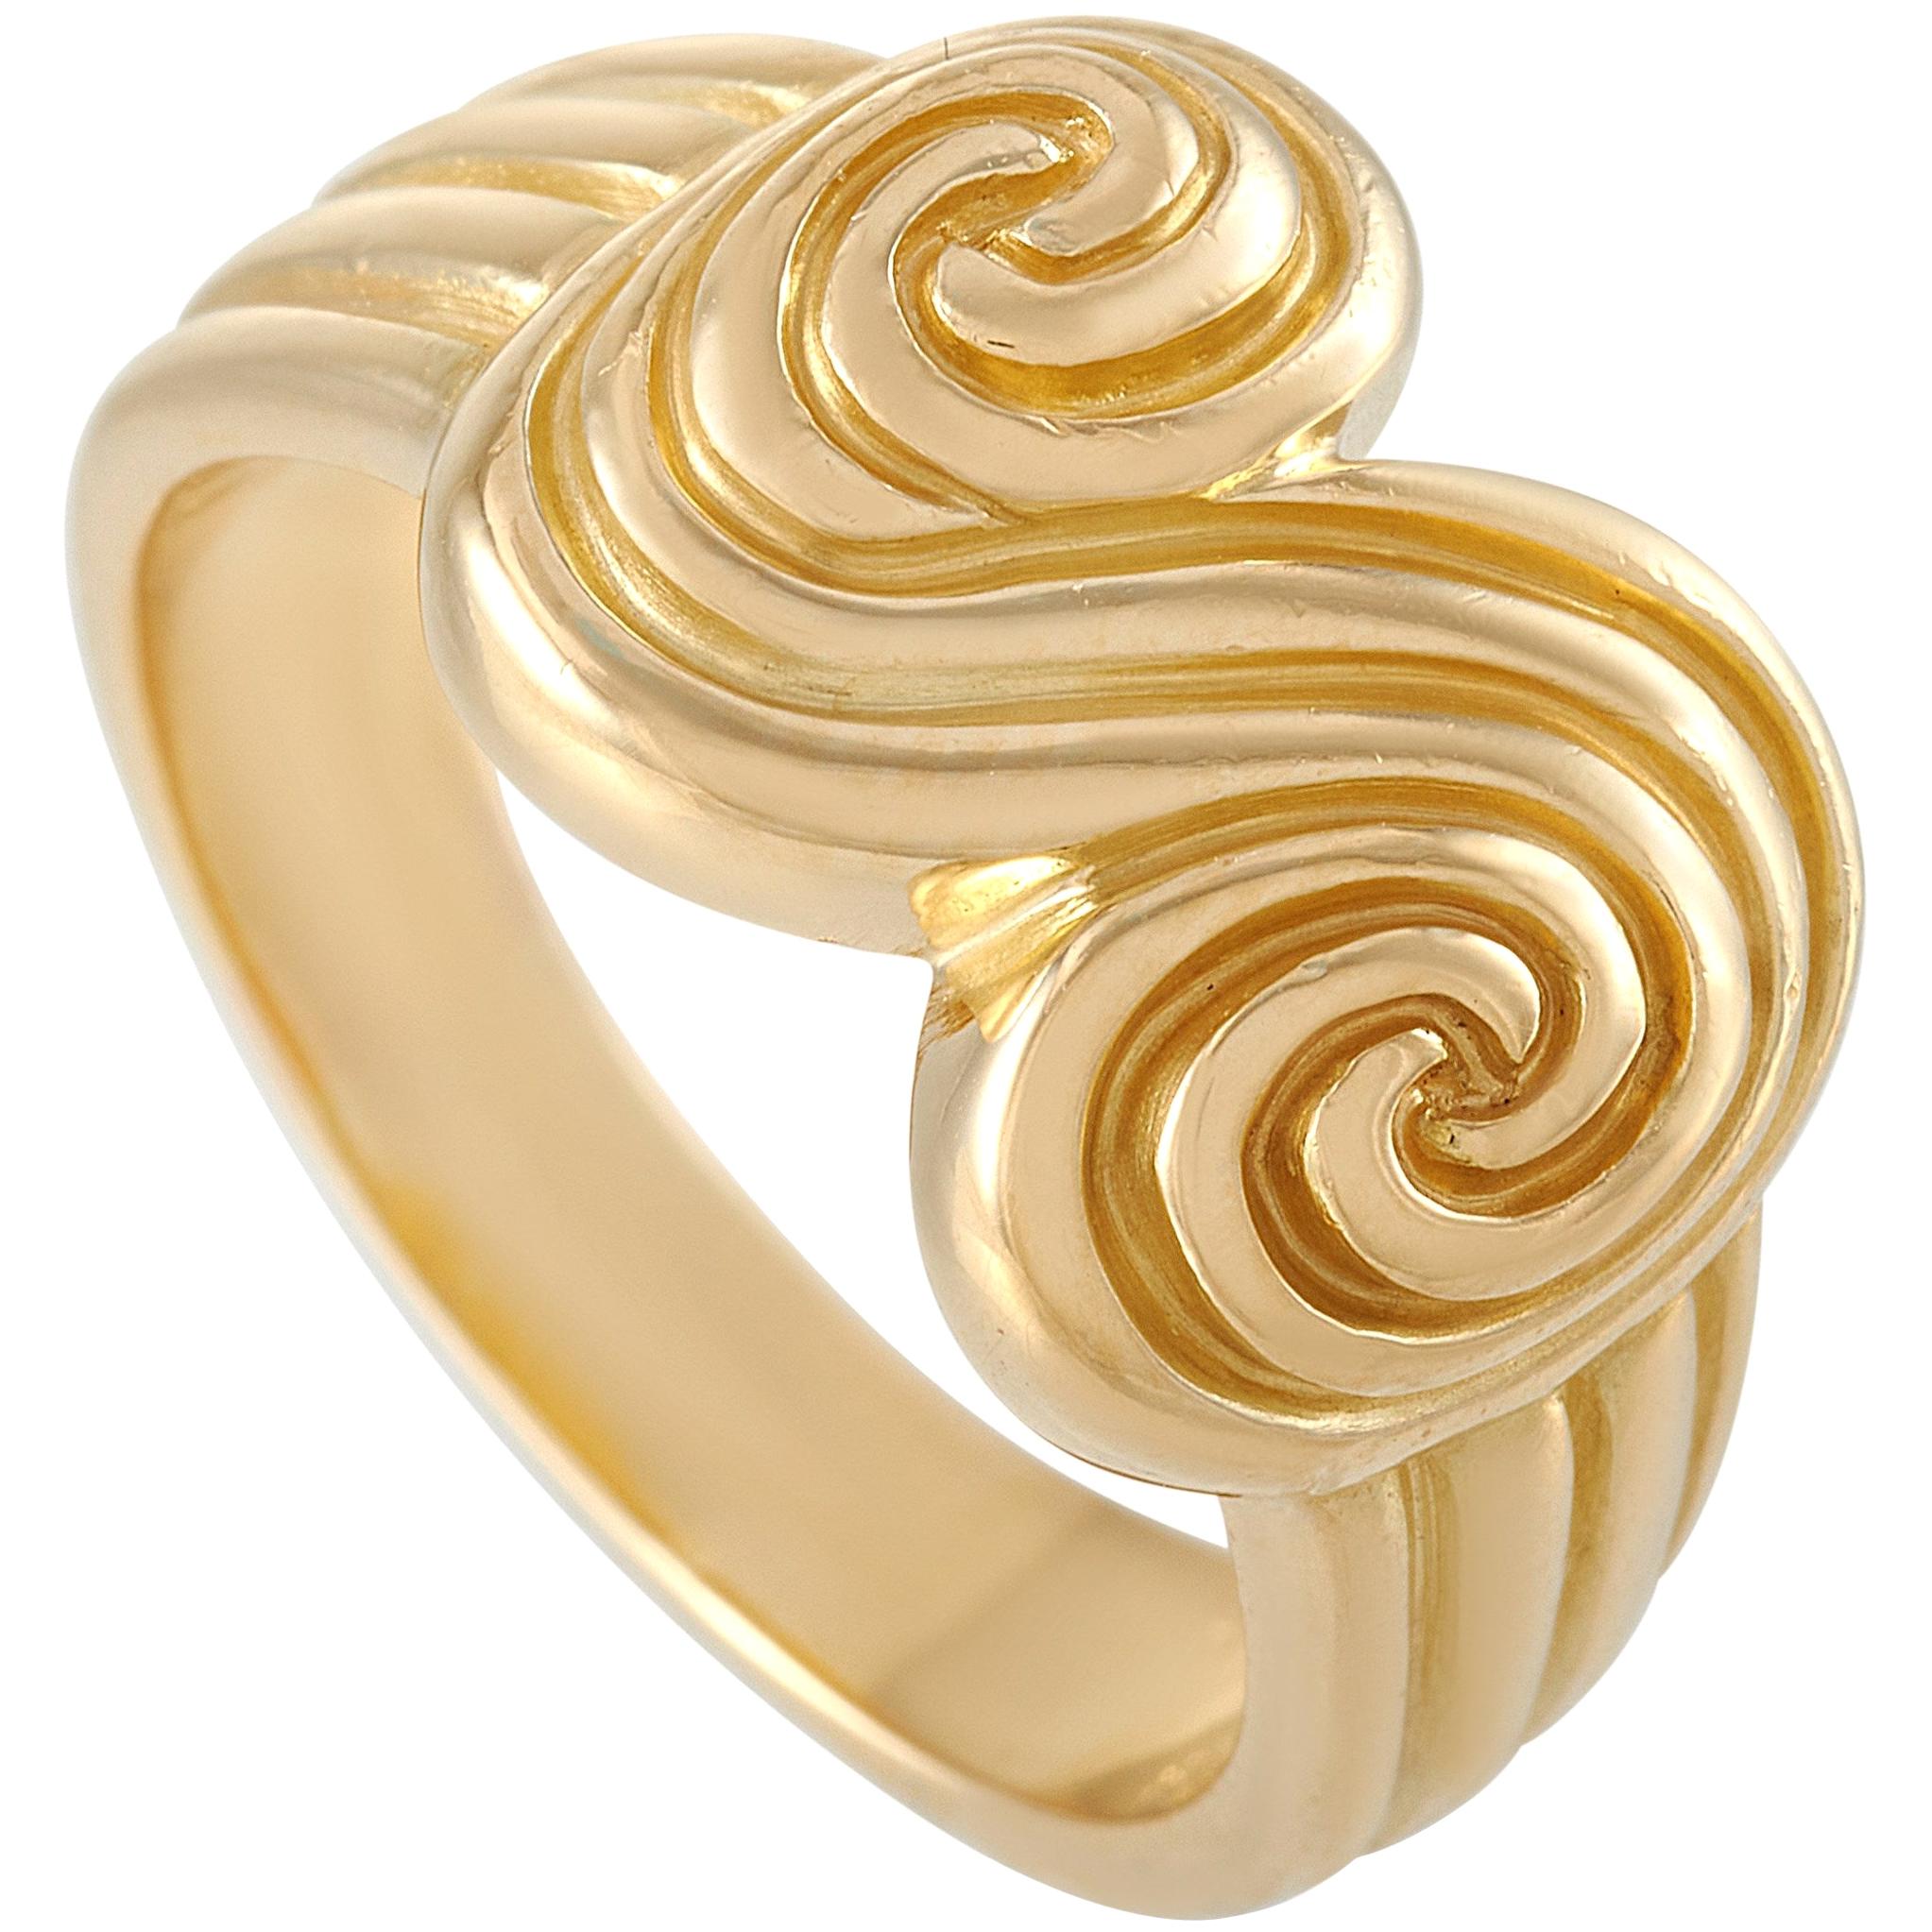 Tiffany & Co. 18 Karat Yellow Gold Ring